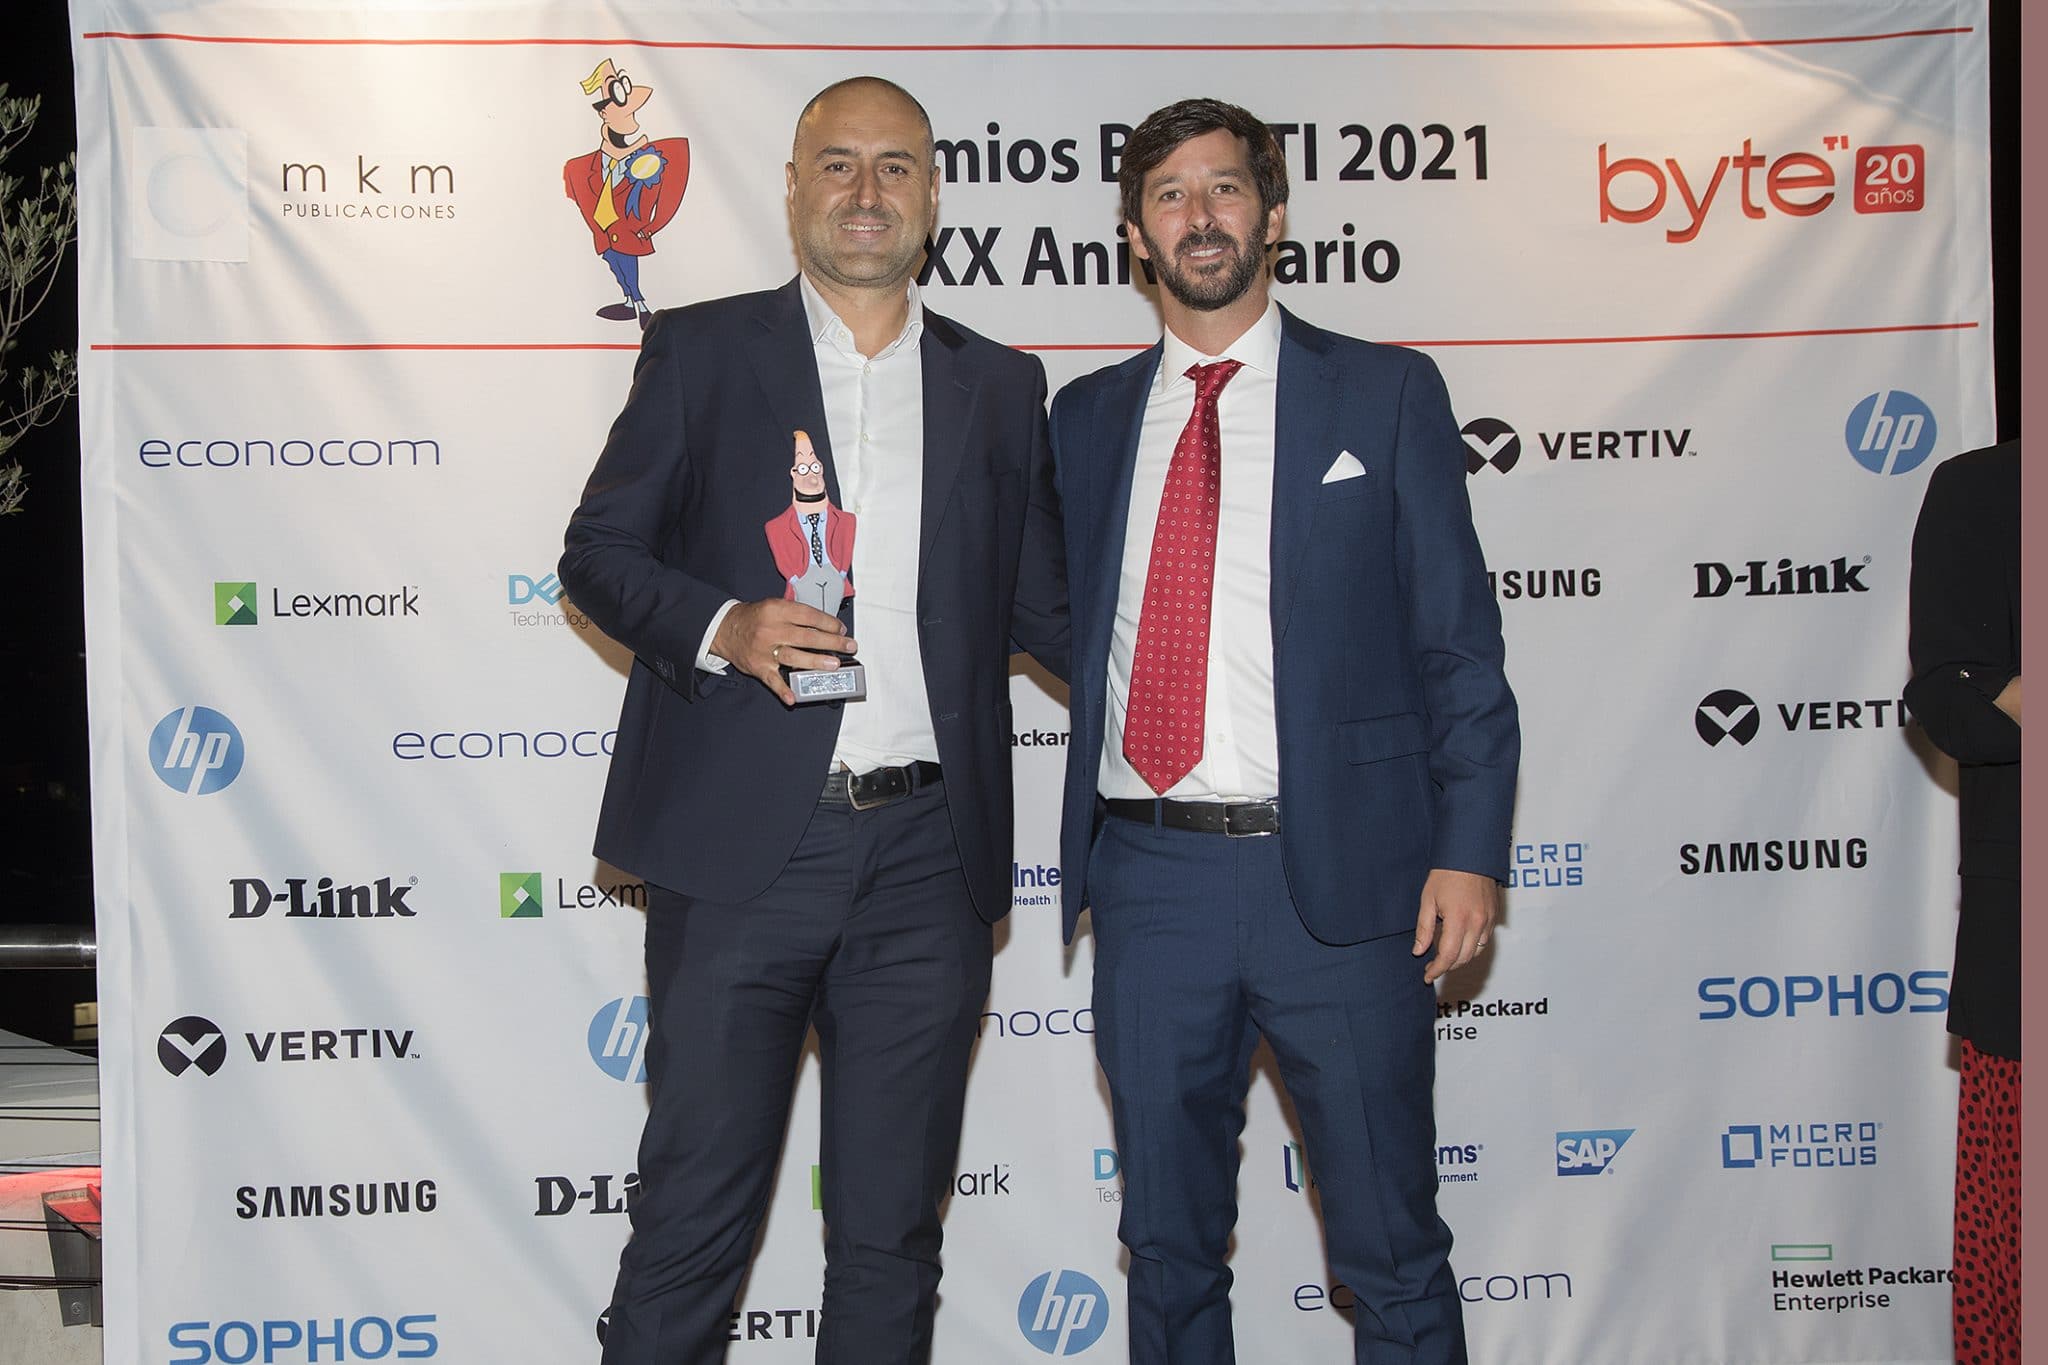 Leandro Herminda, CIO de Ibercaja Banco, recoge el premio al mejor CIO del Año